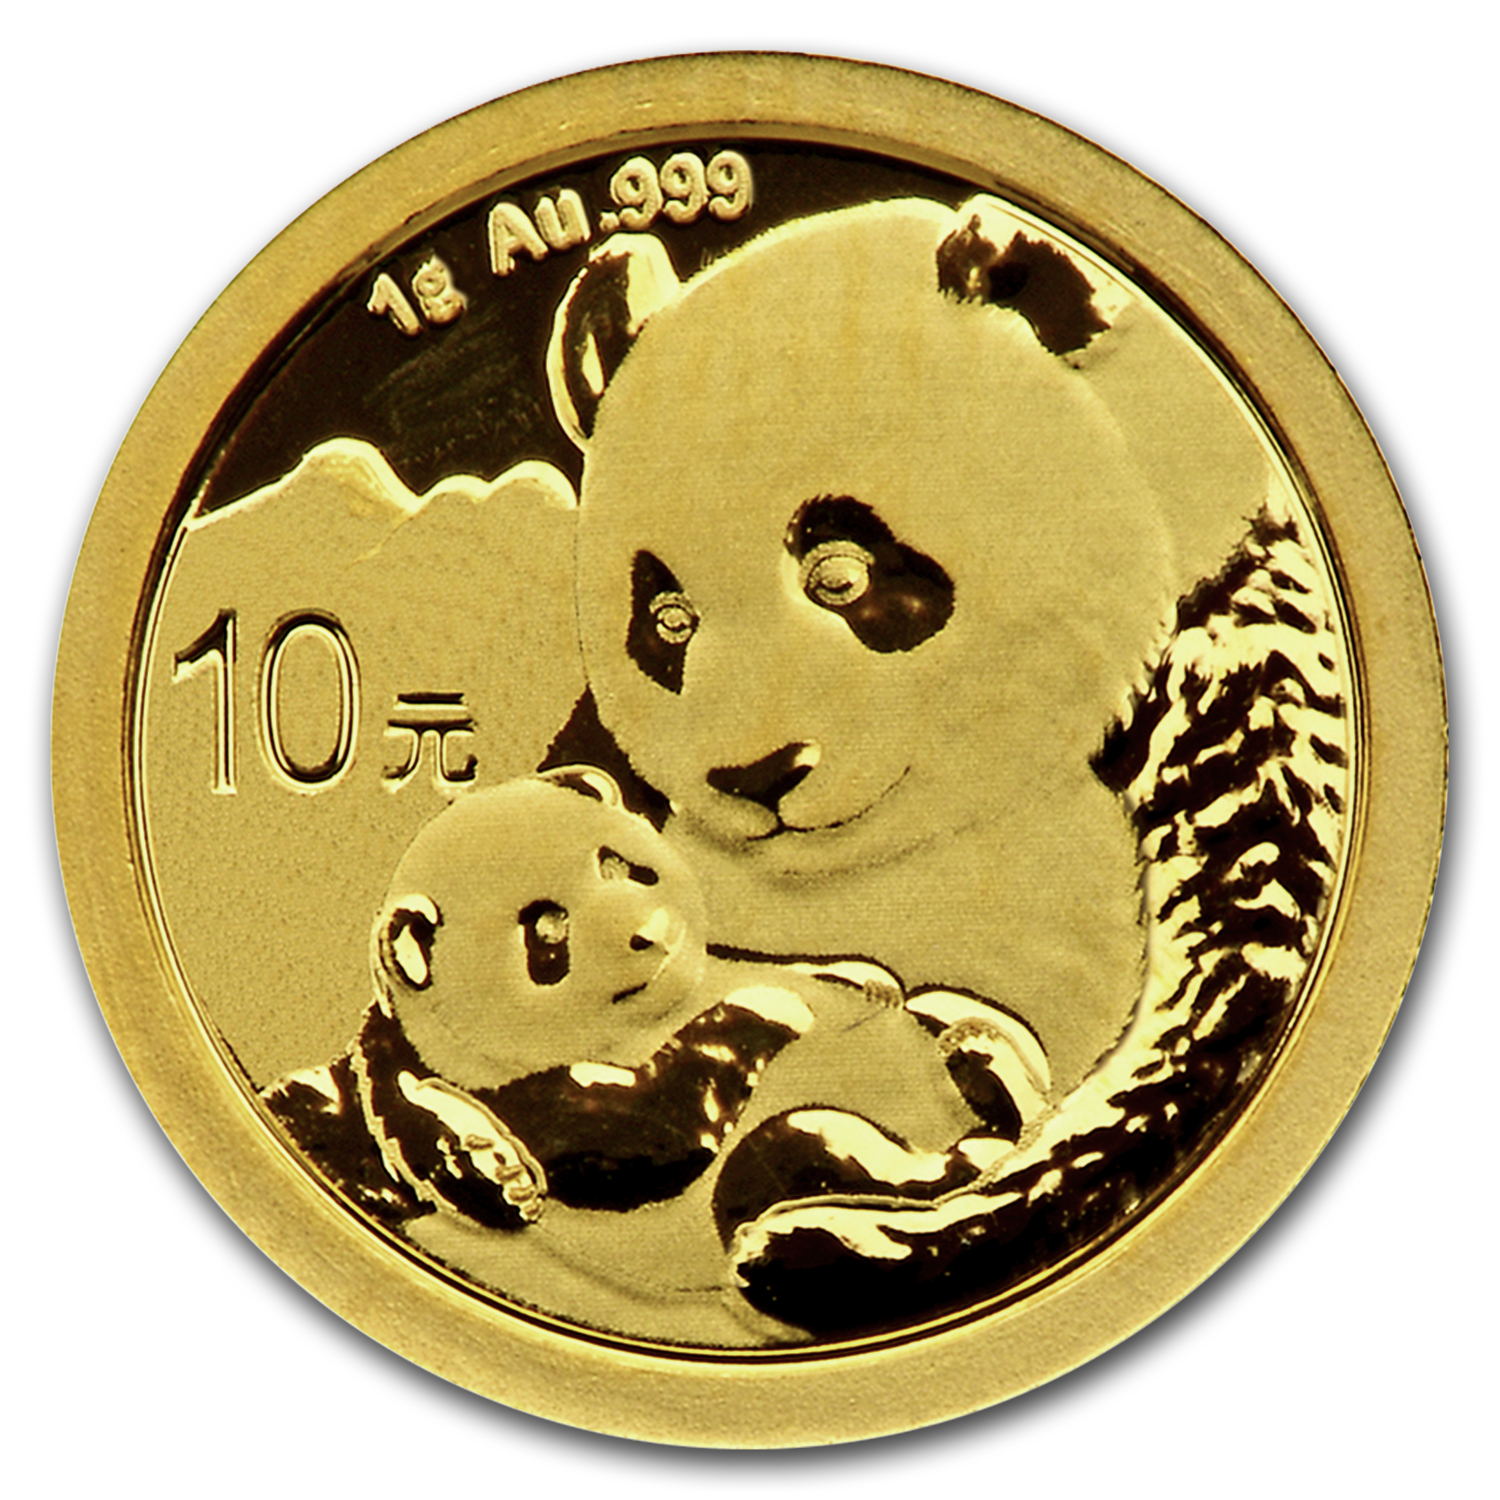 Gramm coin цена. Монеты Панда 2019. Китайская Золотая монета «Панда». Золотая инвестиционная монета Панда. Монета Панда золото.